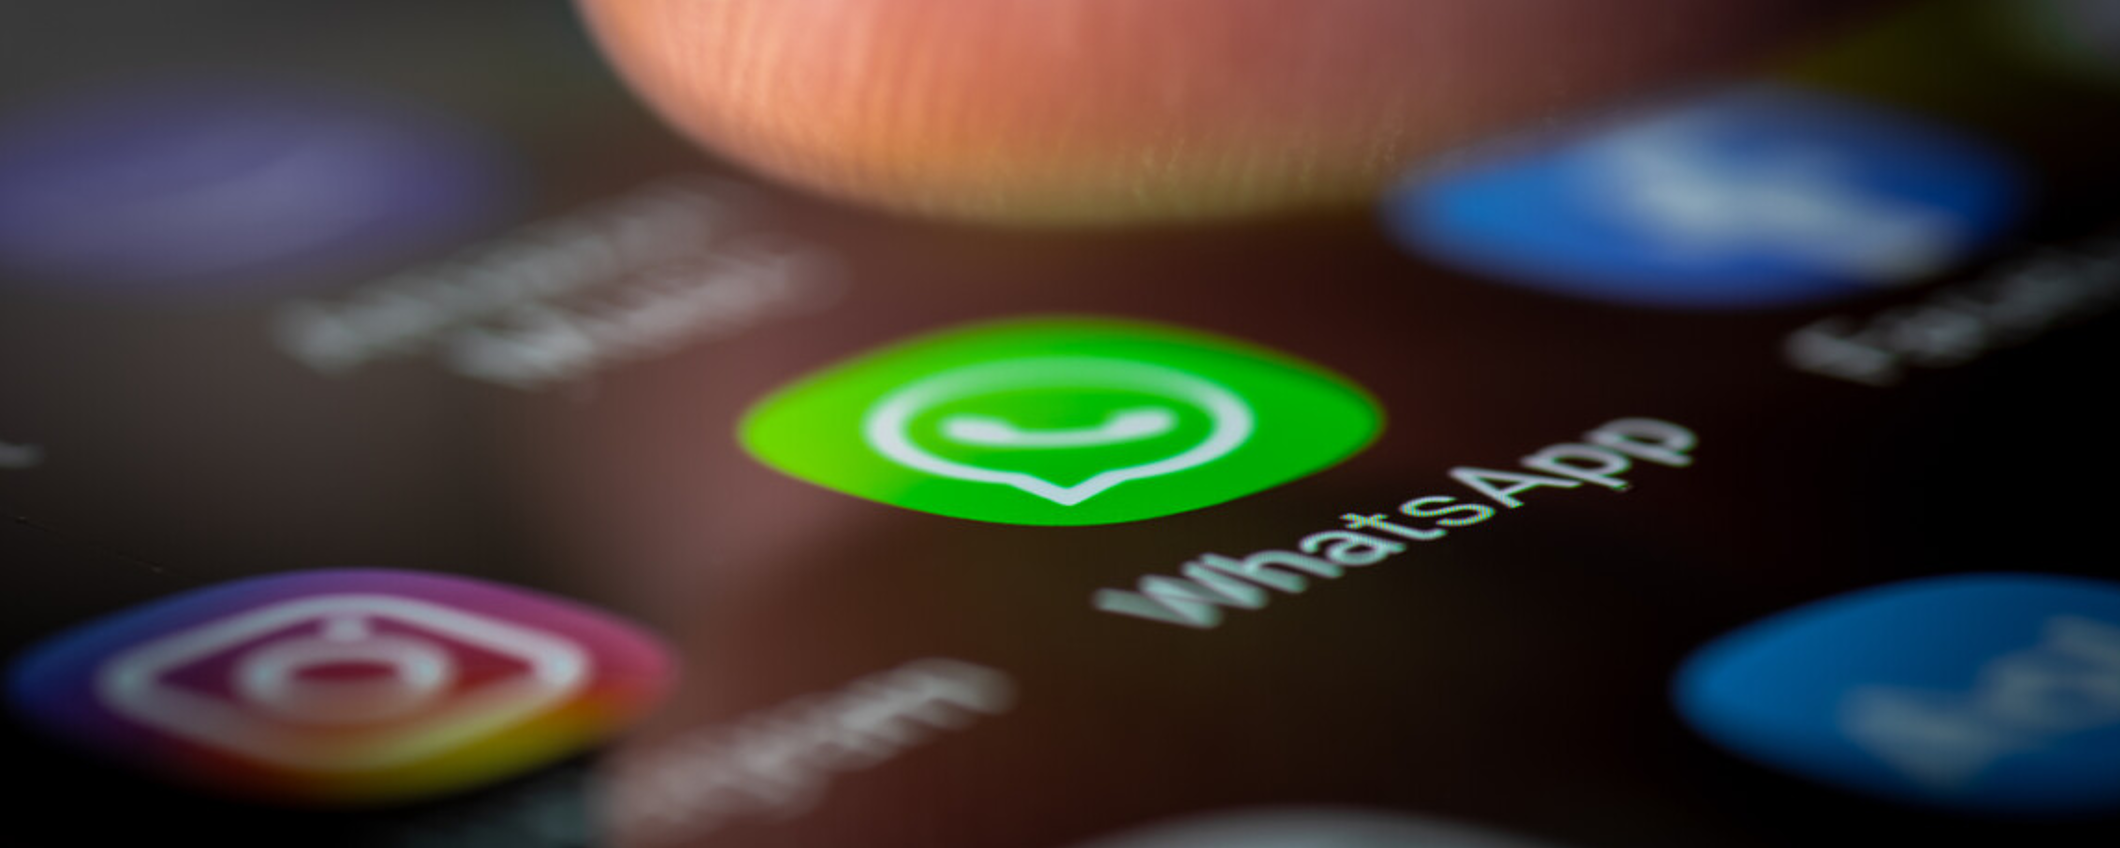 WhatsApp, nuova interfaccia grafica per le chiamate: cosa cambia?